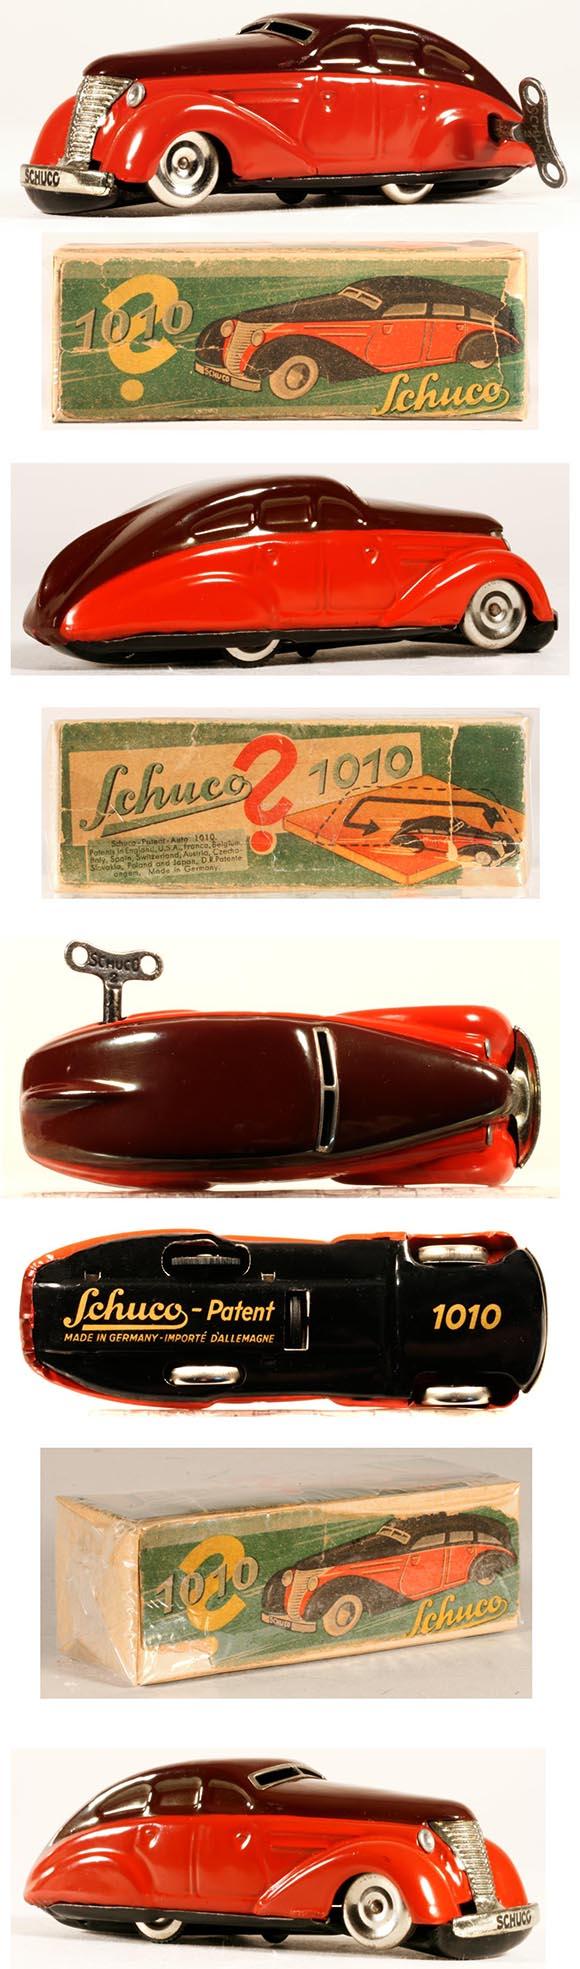 1937 Schuco, No.1010 Mystery Auto in Original Box